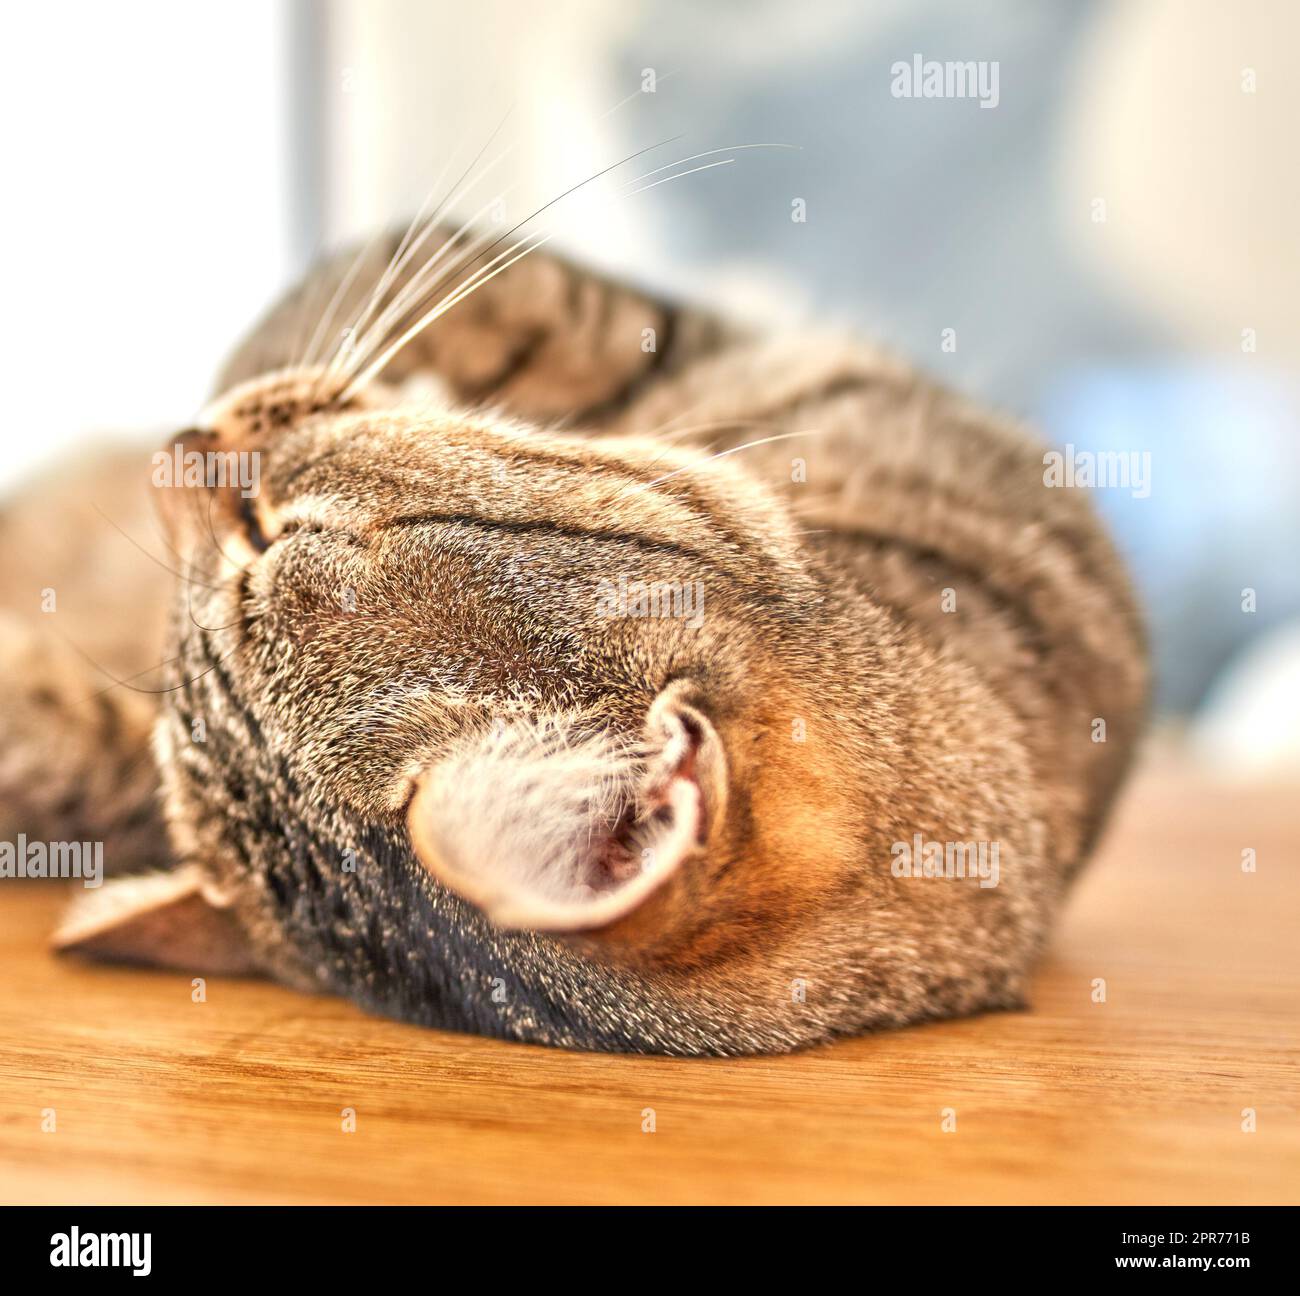 Joli chat gris tabby couché sur le sol avec ses yeux fermés. Gros plan d'une féline avec de longs whiskers, dormant ou reposant sur une surface en bois à la maison. Puriner un chat sur son dos rêvant d'être pété Banque D'Images